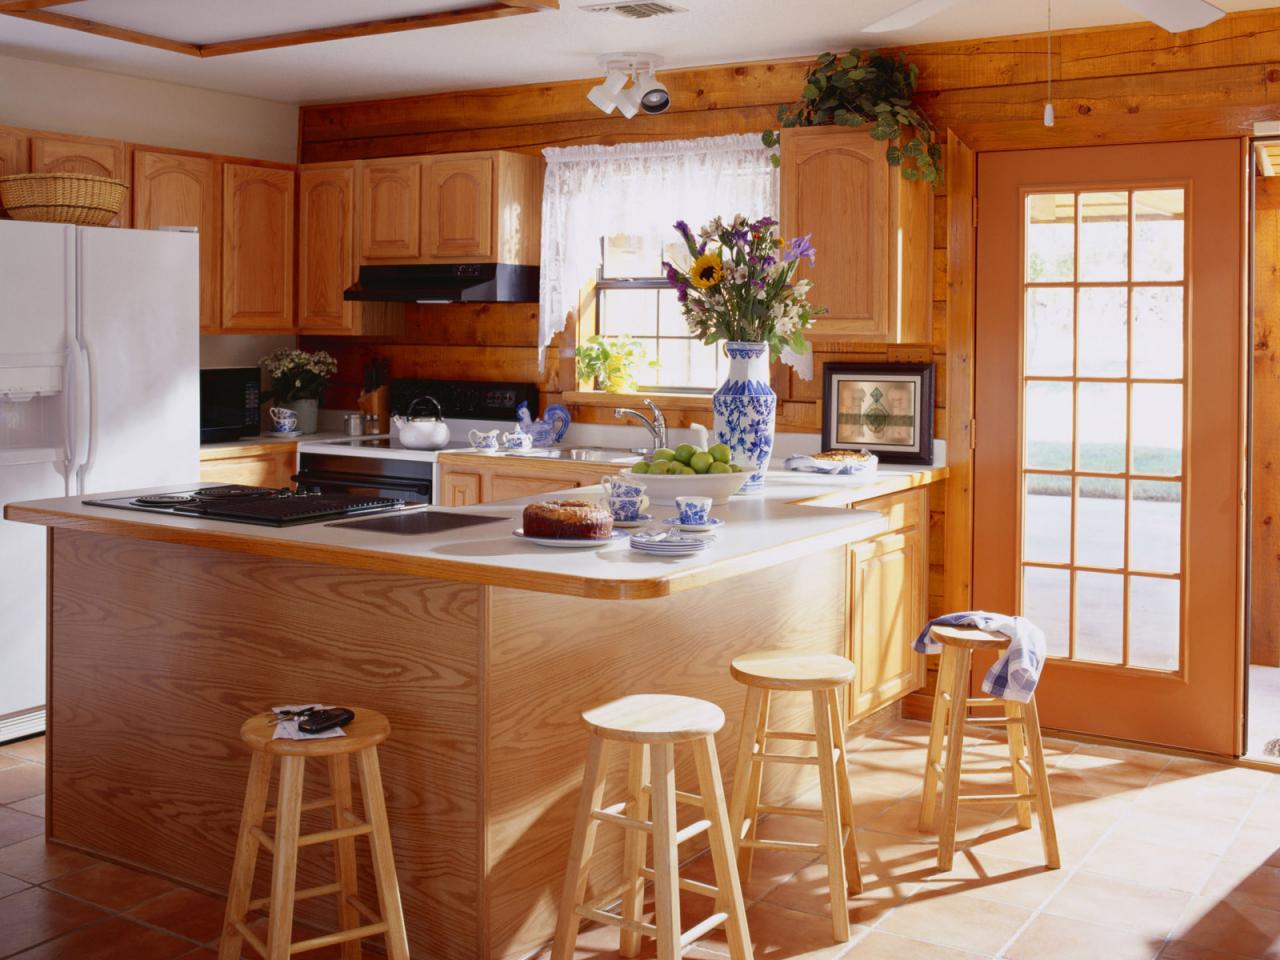 Как декорировать кухонное помещение в деревянном доме правильно и оригинально?